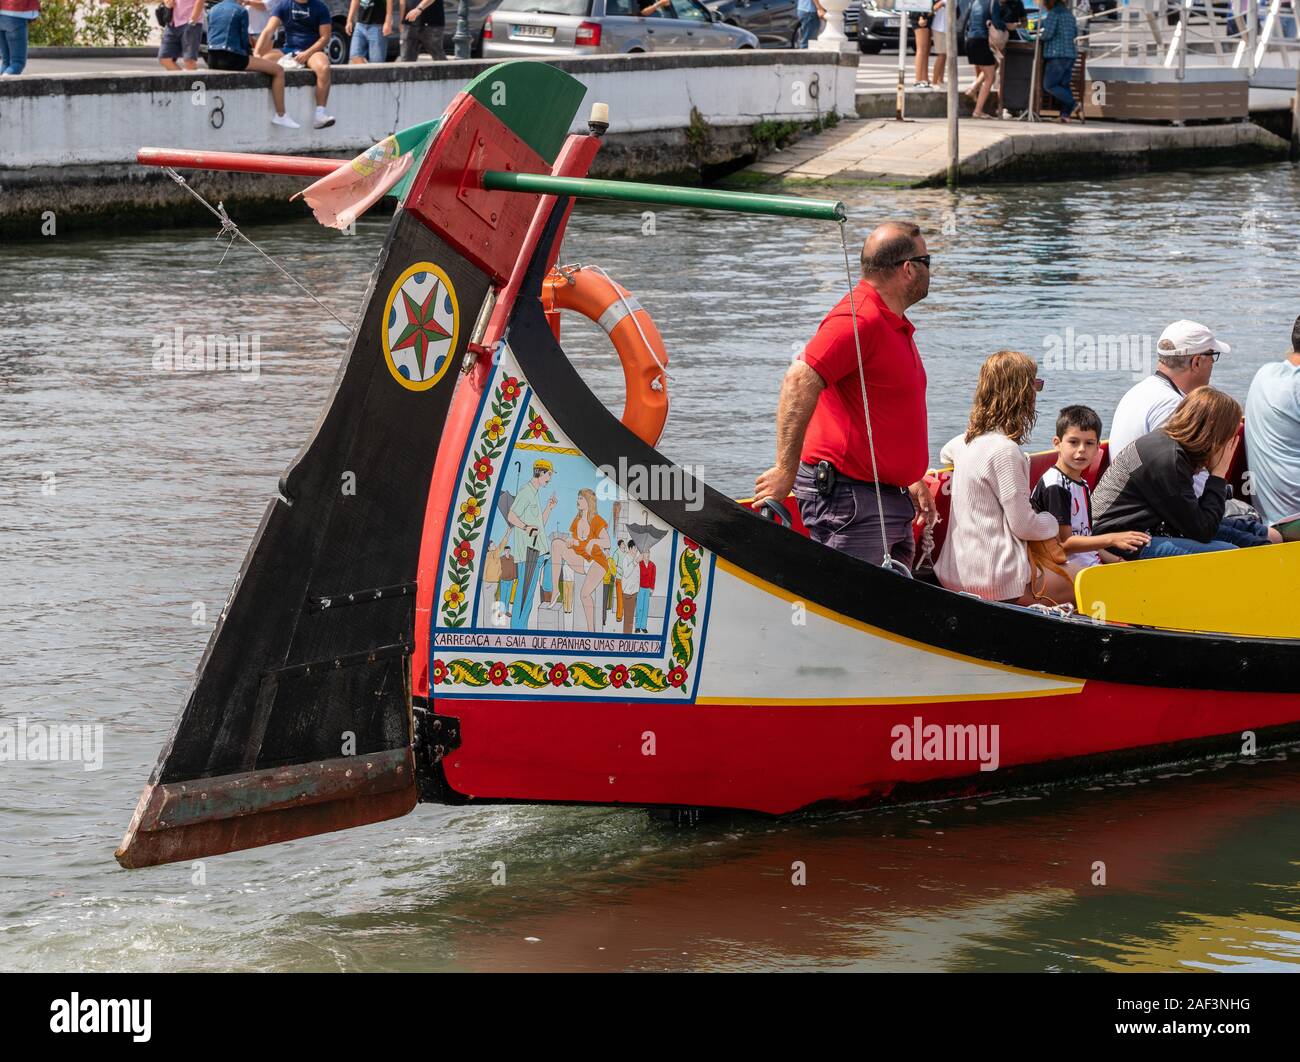 Aveiro, Portugal - 19 août 2019 : Risque peintures sur le gouvernail du bateau touristique sur les canaux Aveiro Banque D'Images